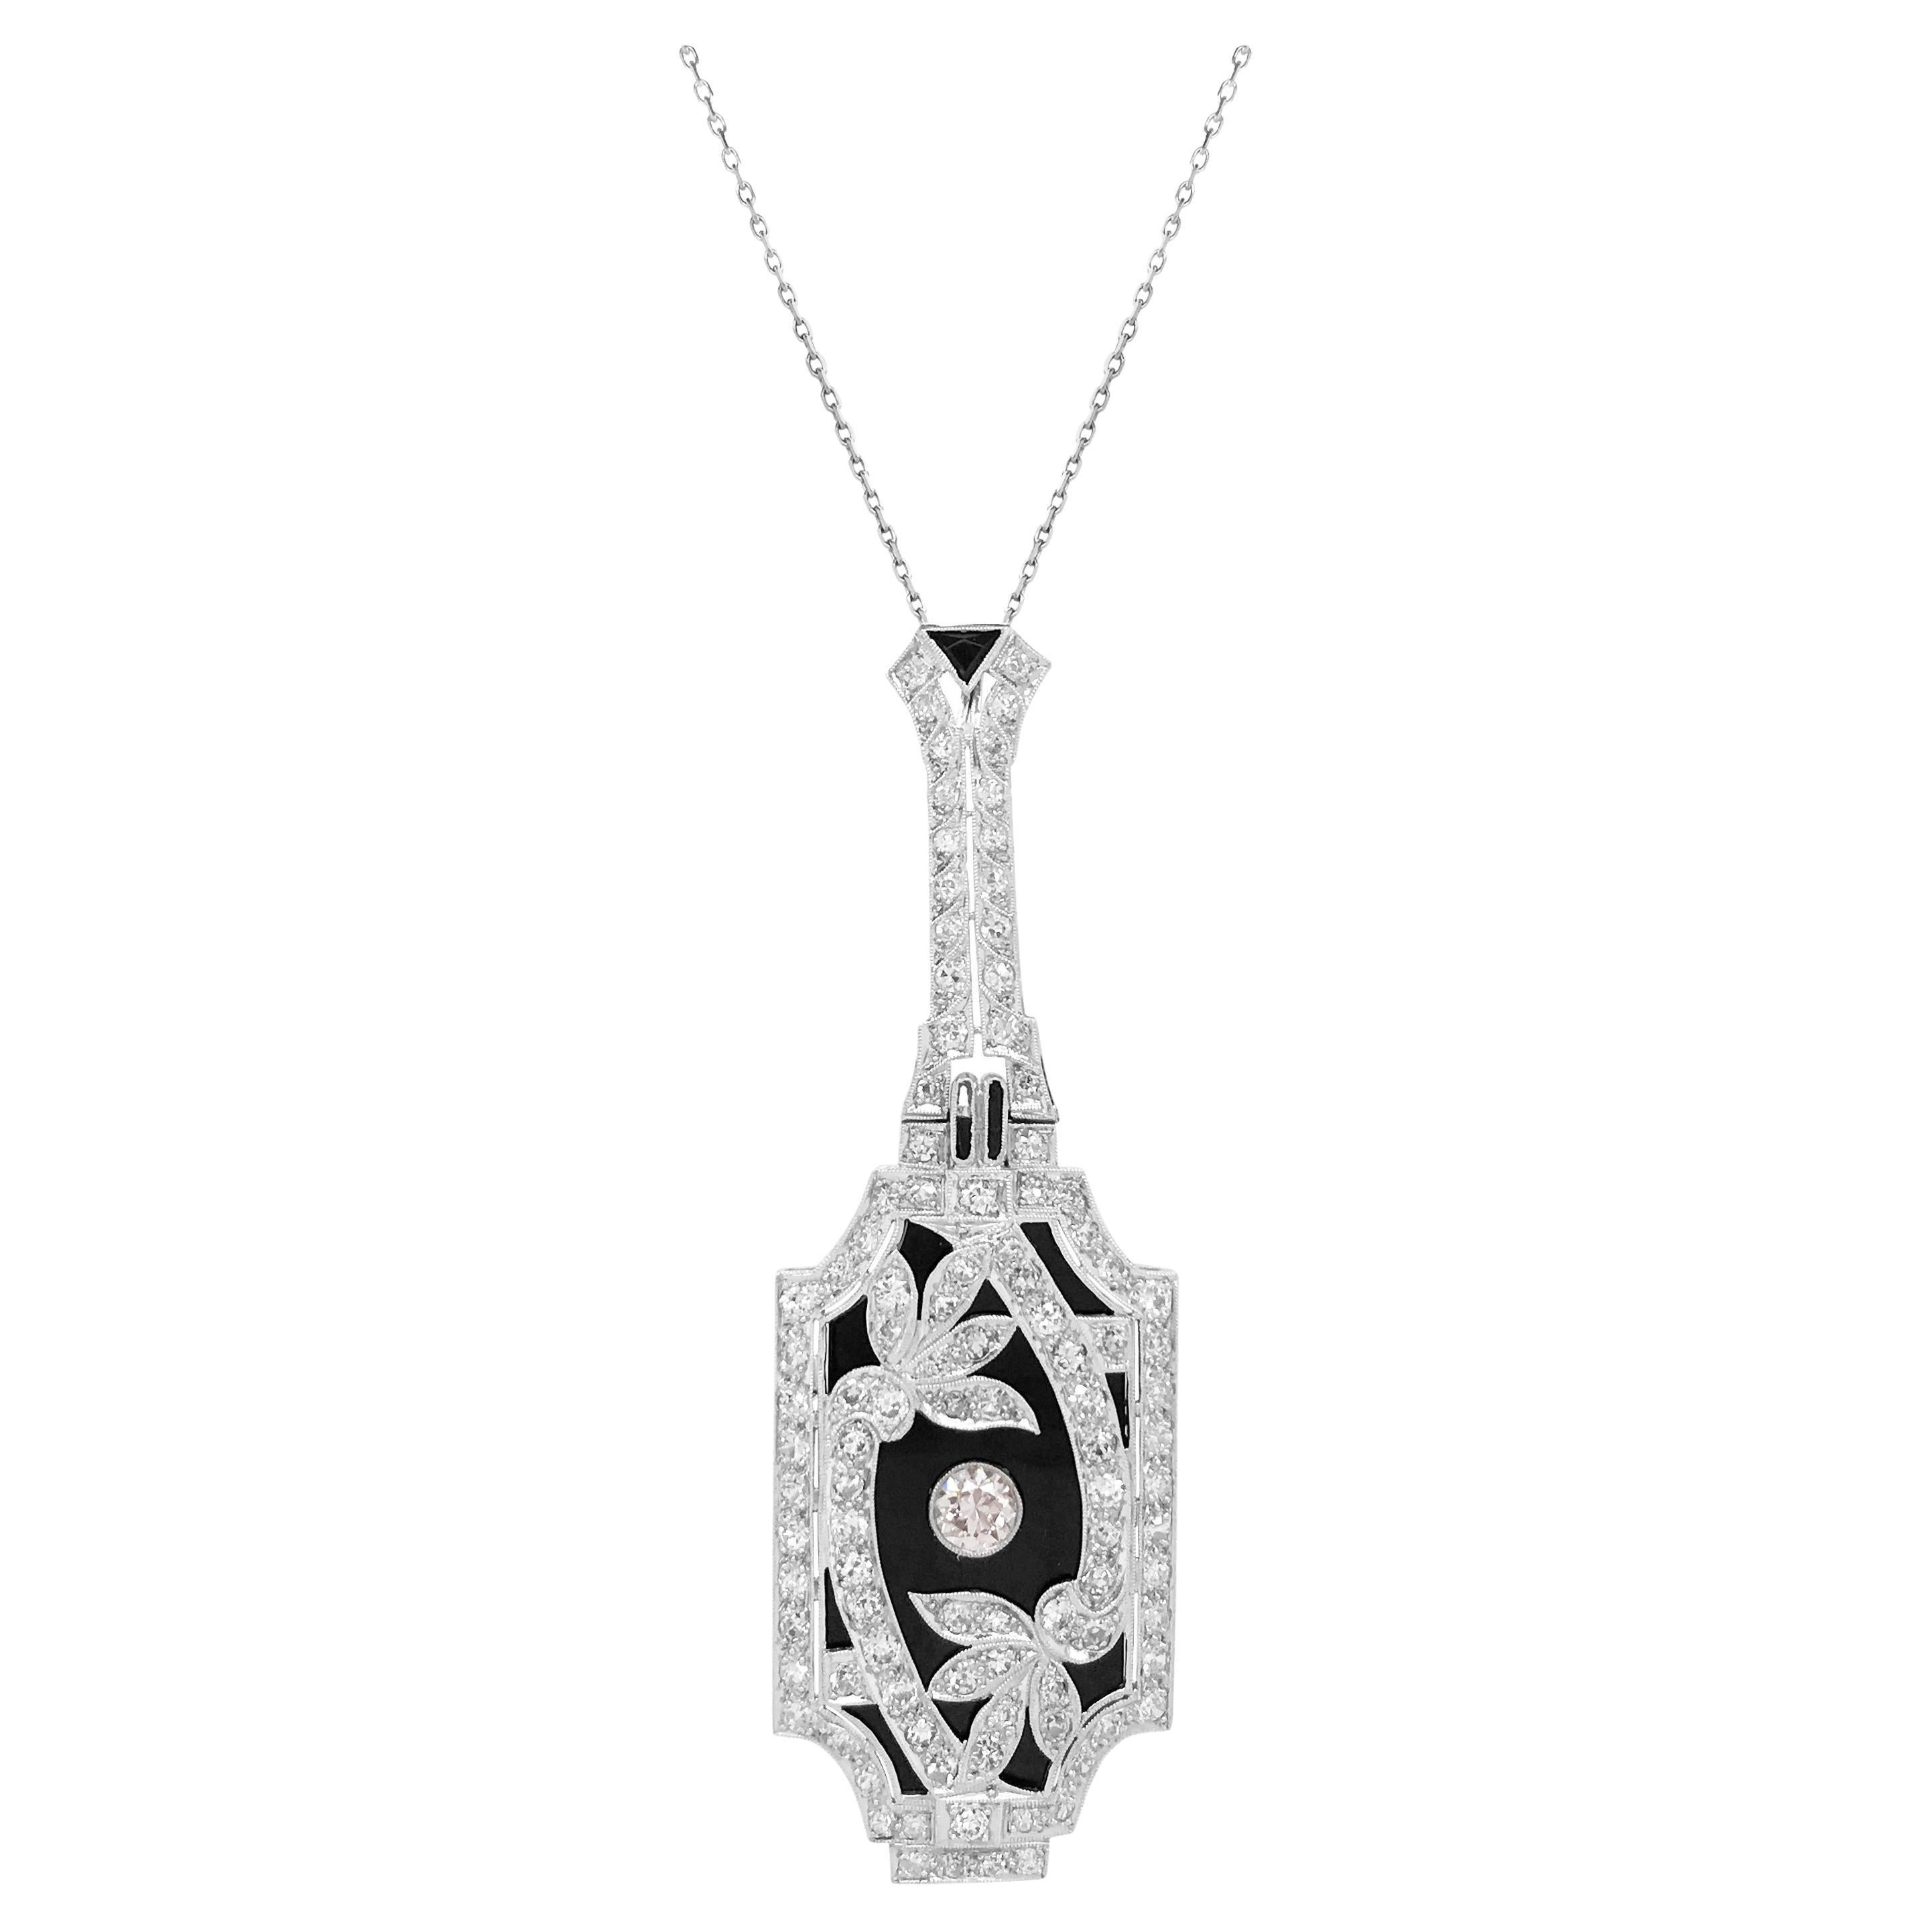 Halskette mit Diamant-Onyx-Anhänger